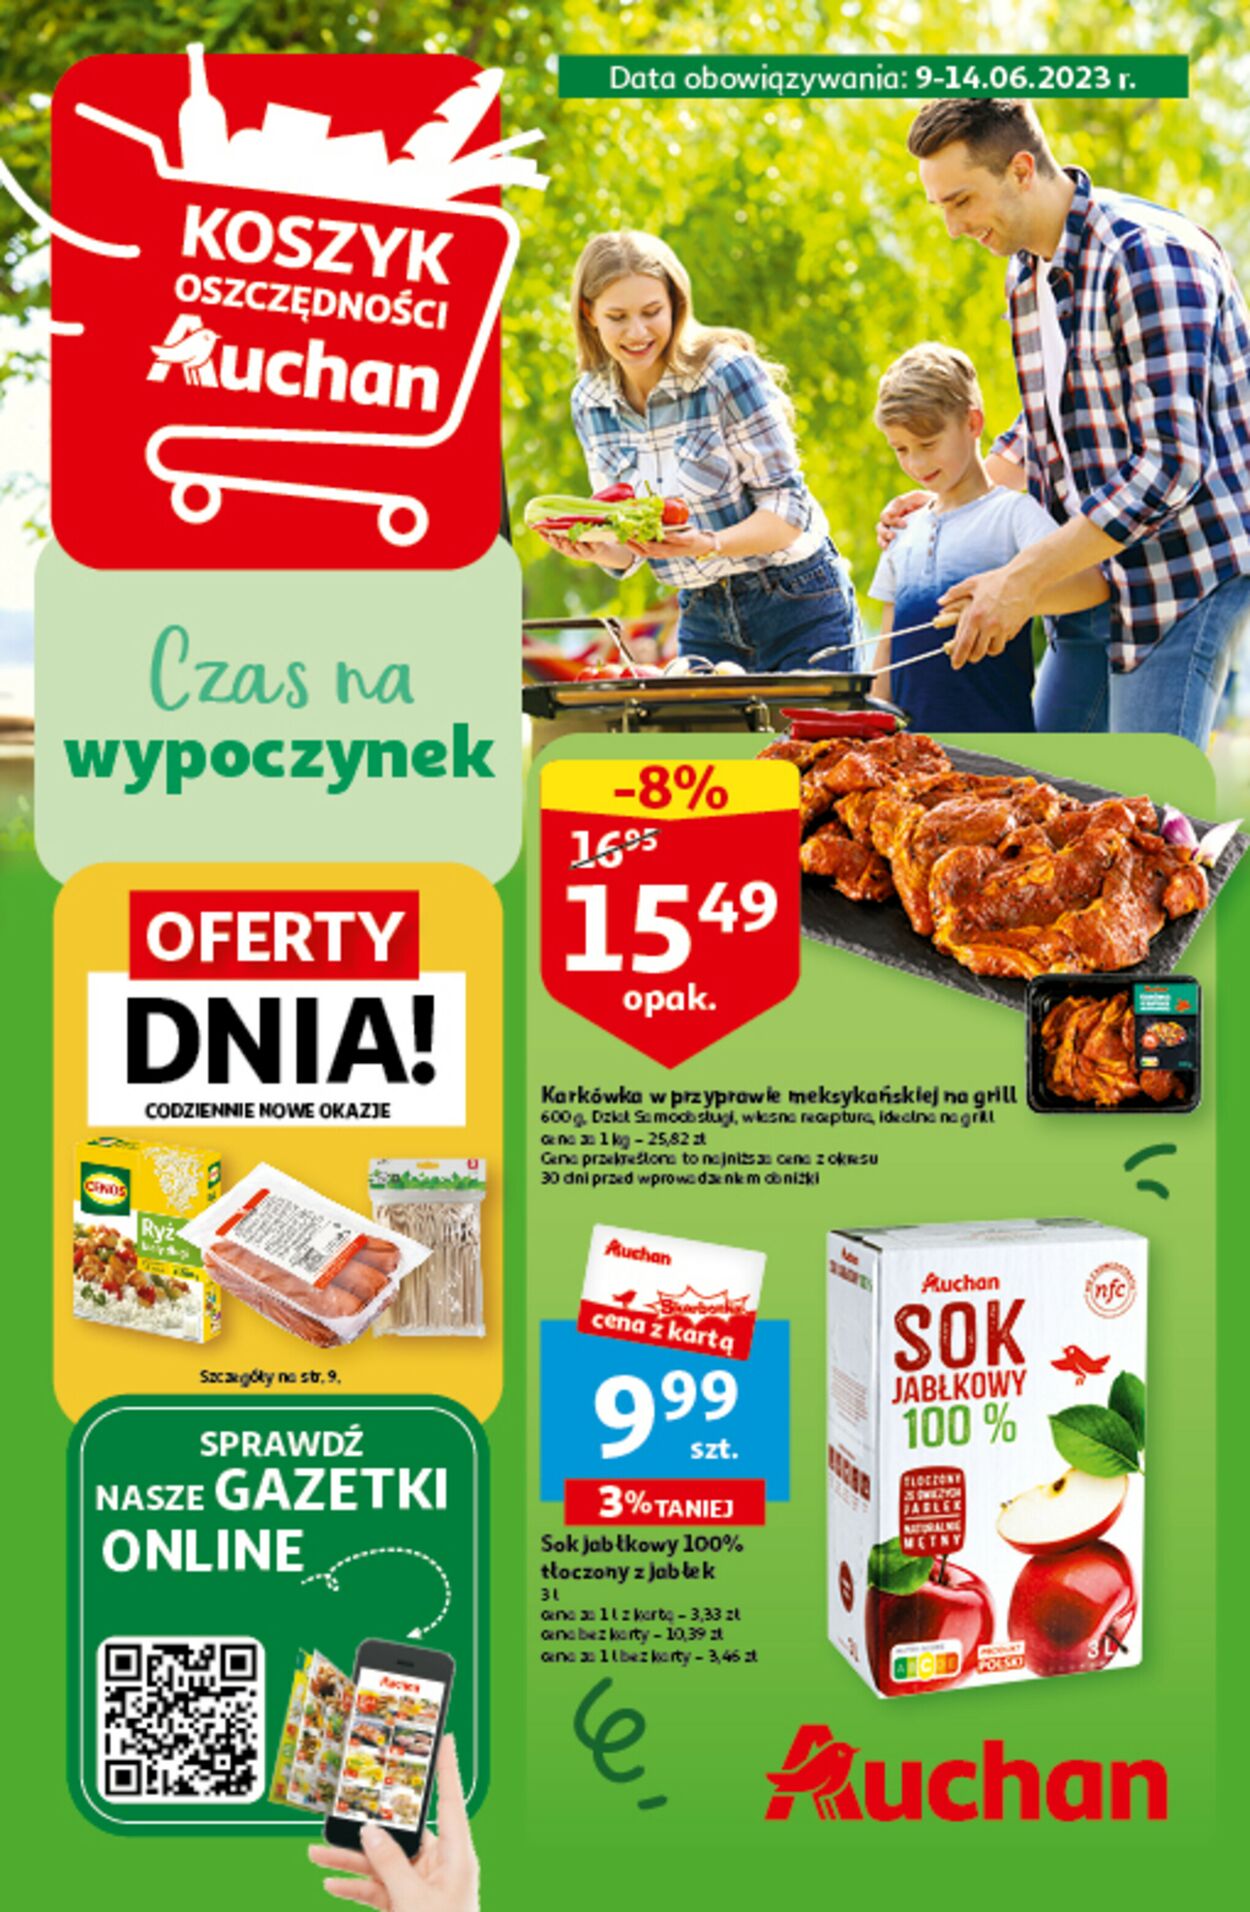 Auchan Gazetka od 09.06.2023